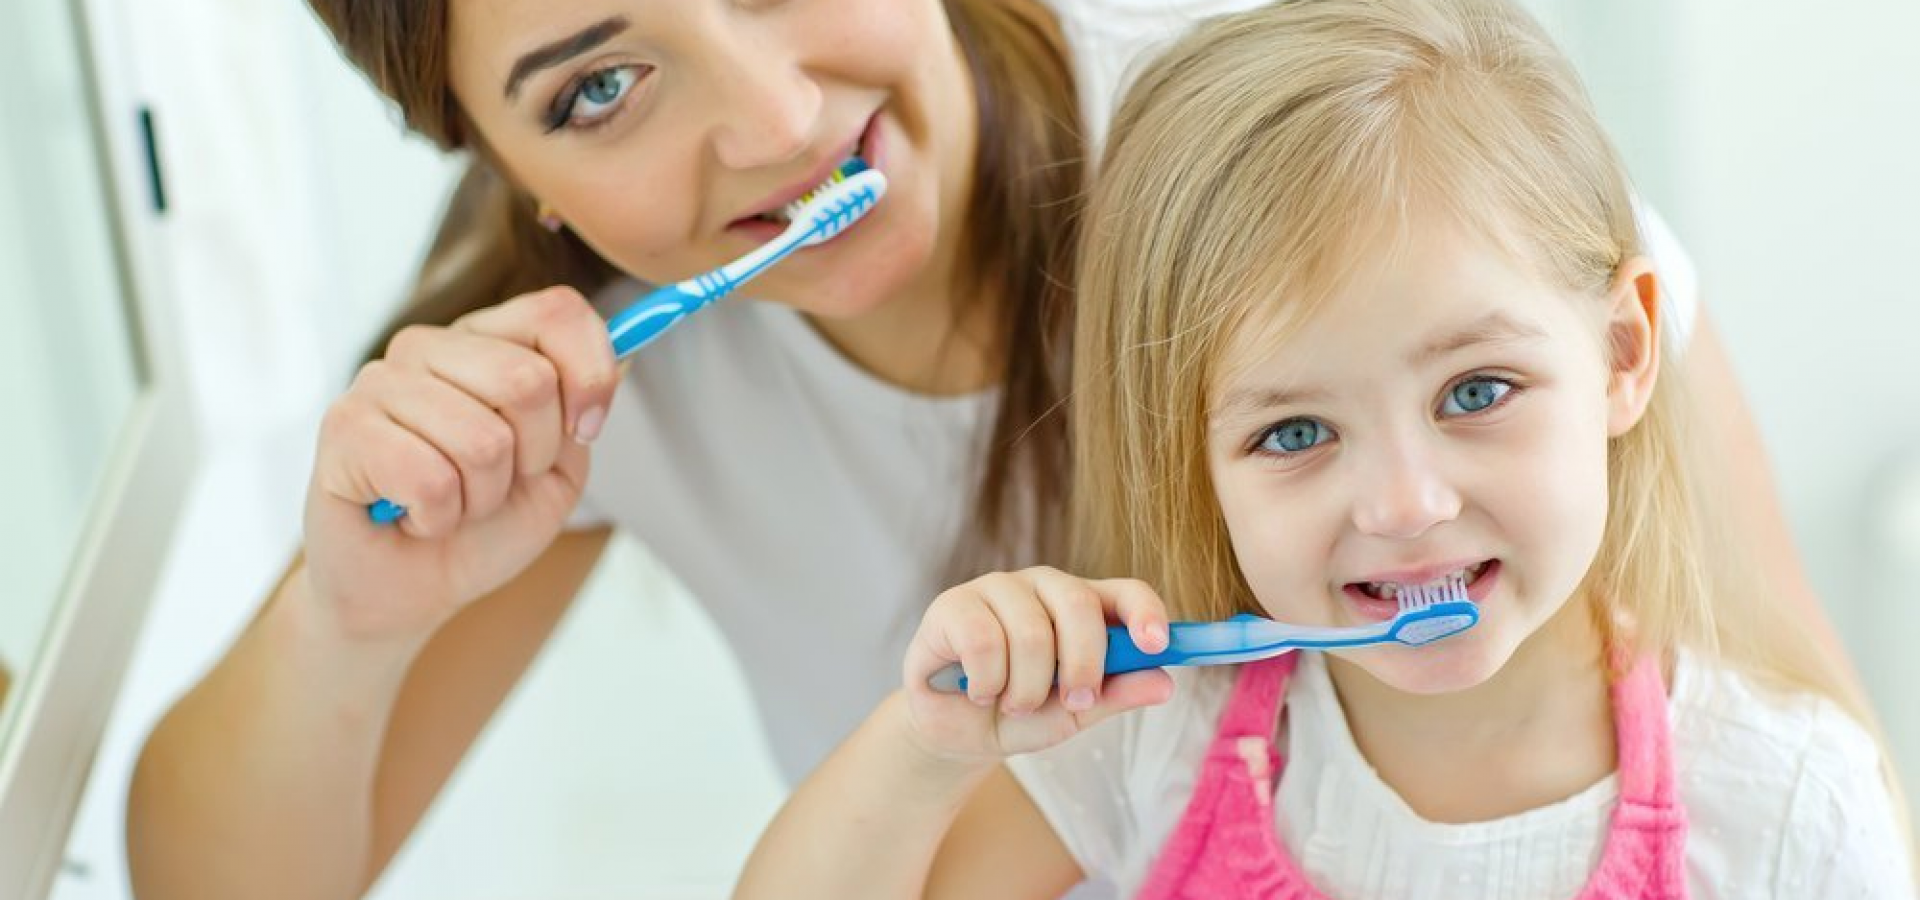 Полезно чистить зубы. Гигиена полости рта. Гигиена зубов для детей. Гигиена полости рта для детей дошкольного возраста. Чистим зубы!.